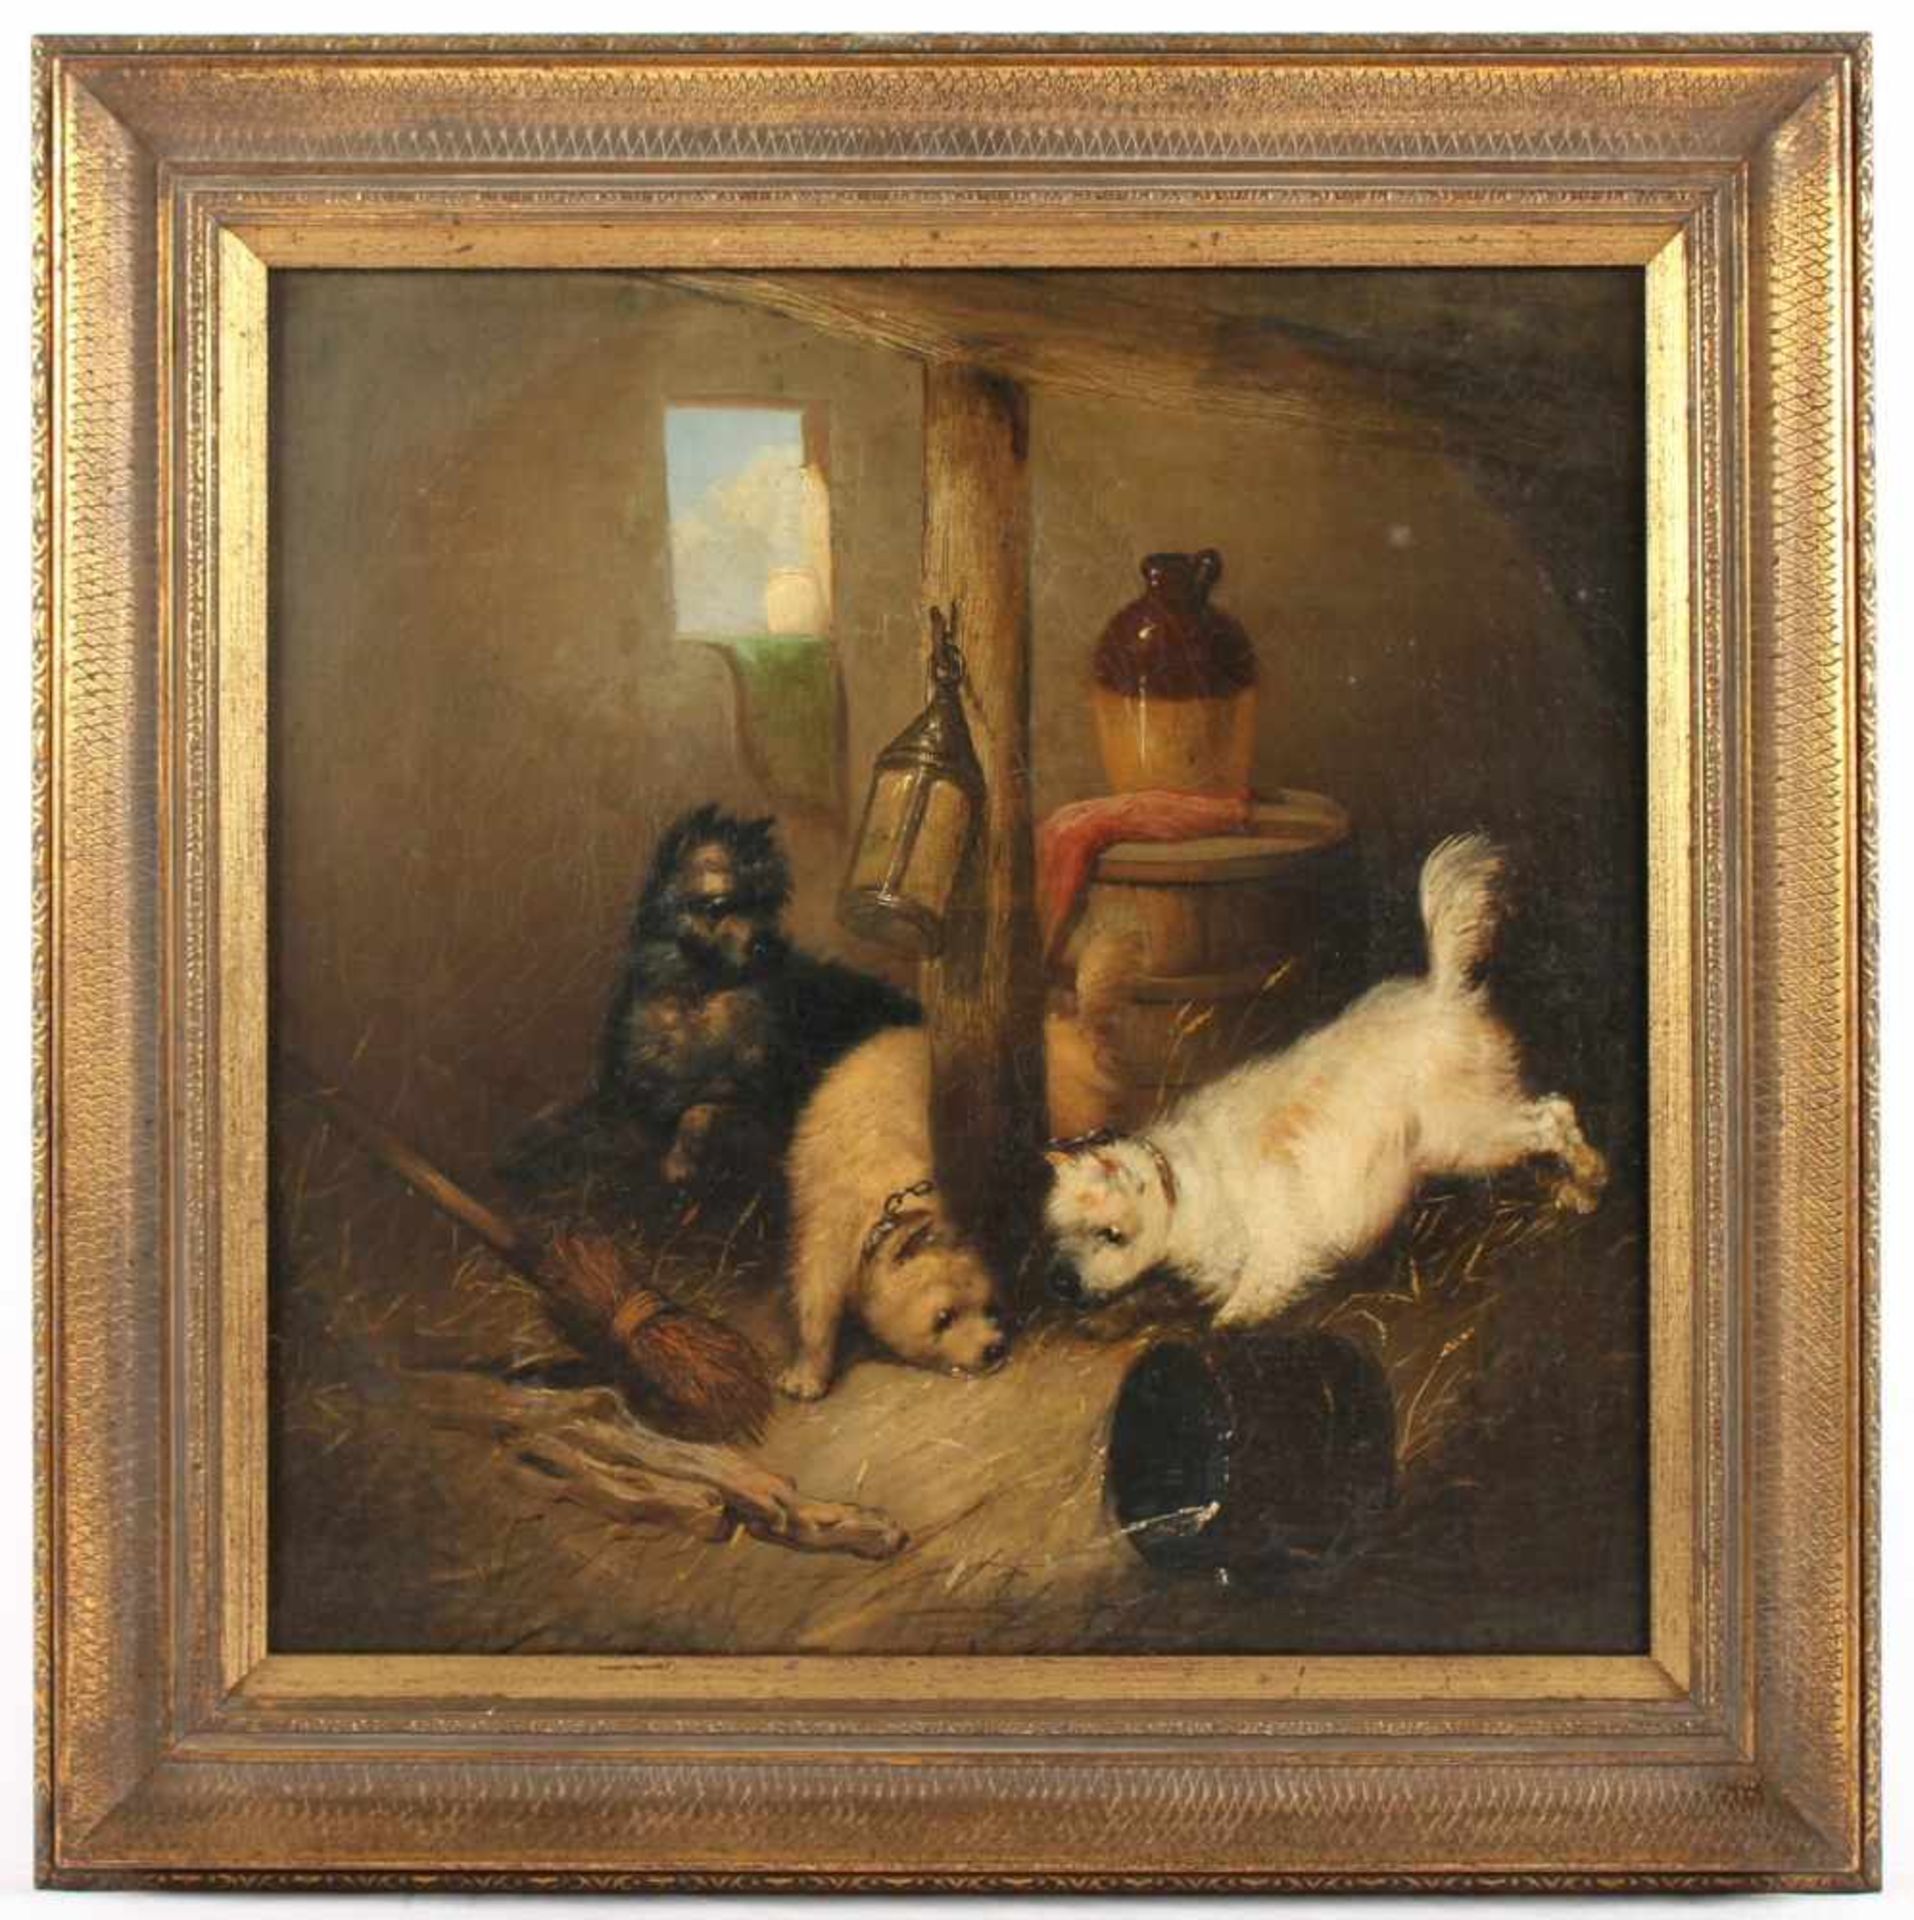 ARMFIELD, George (1808-1893), "Junge spielende Hunde im Stall", Öl/Lwd., 46 x 46, unten links - Bild 2 aus 4